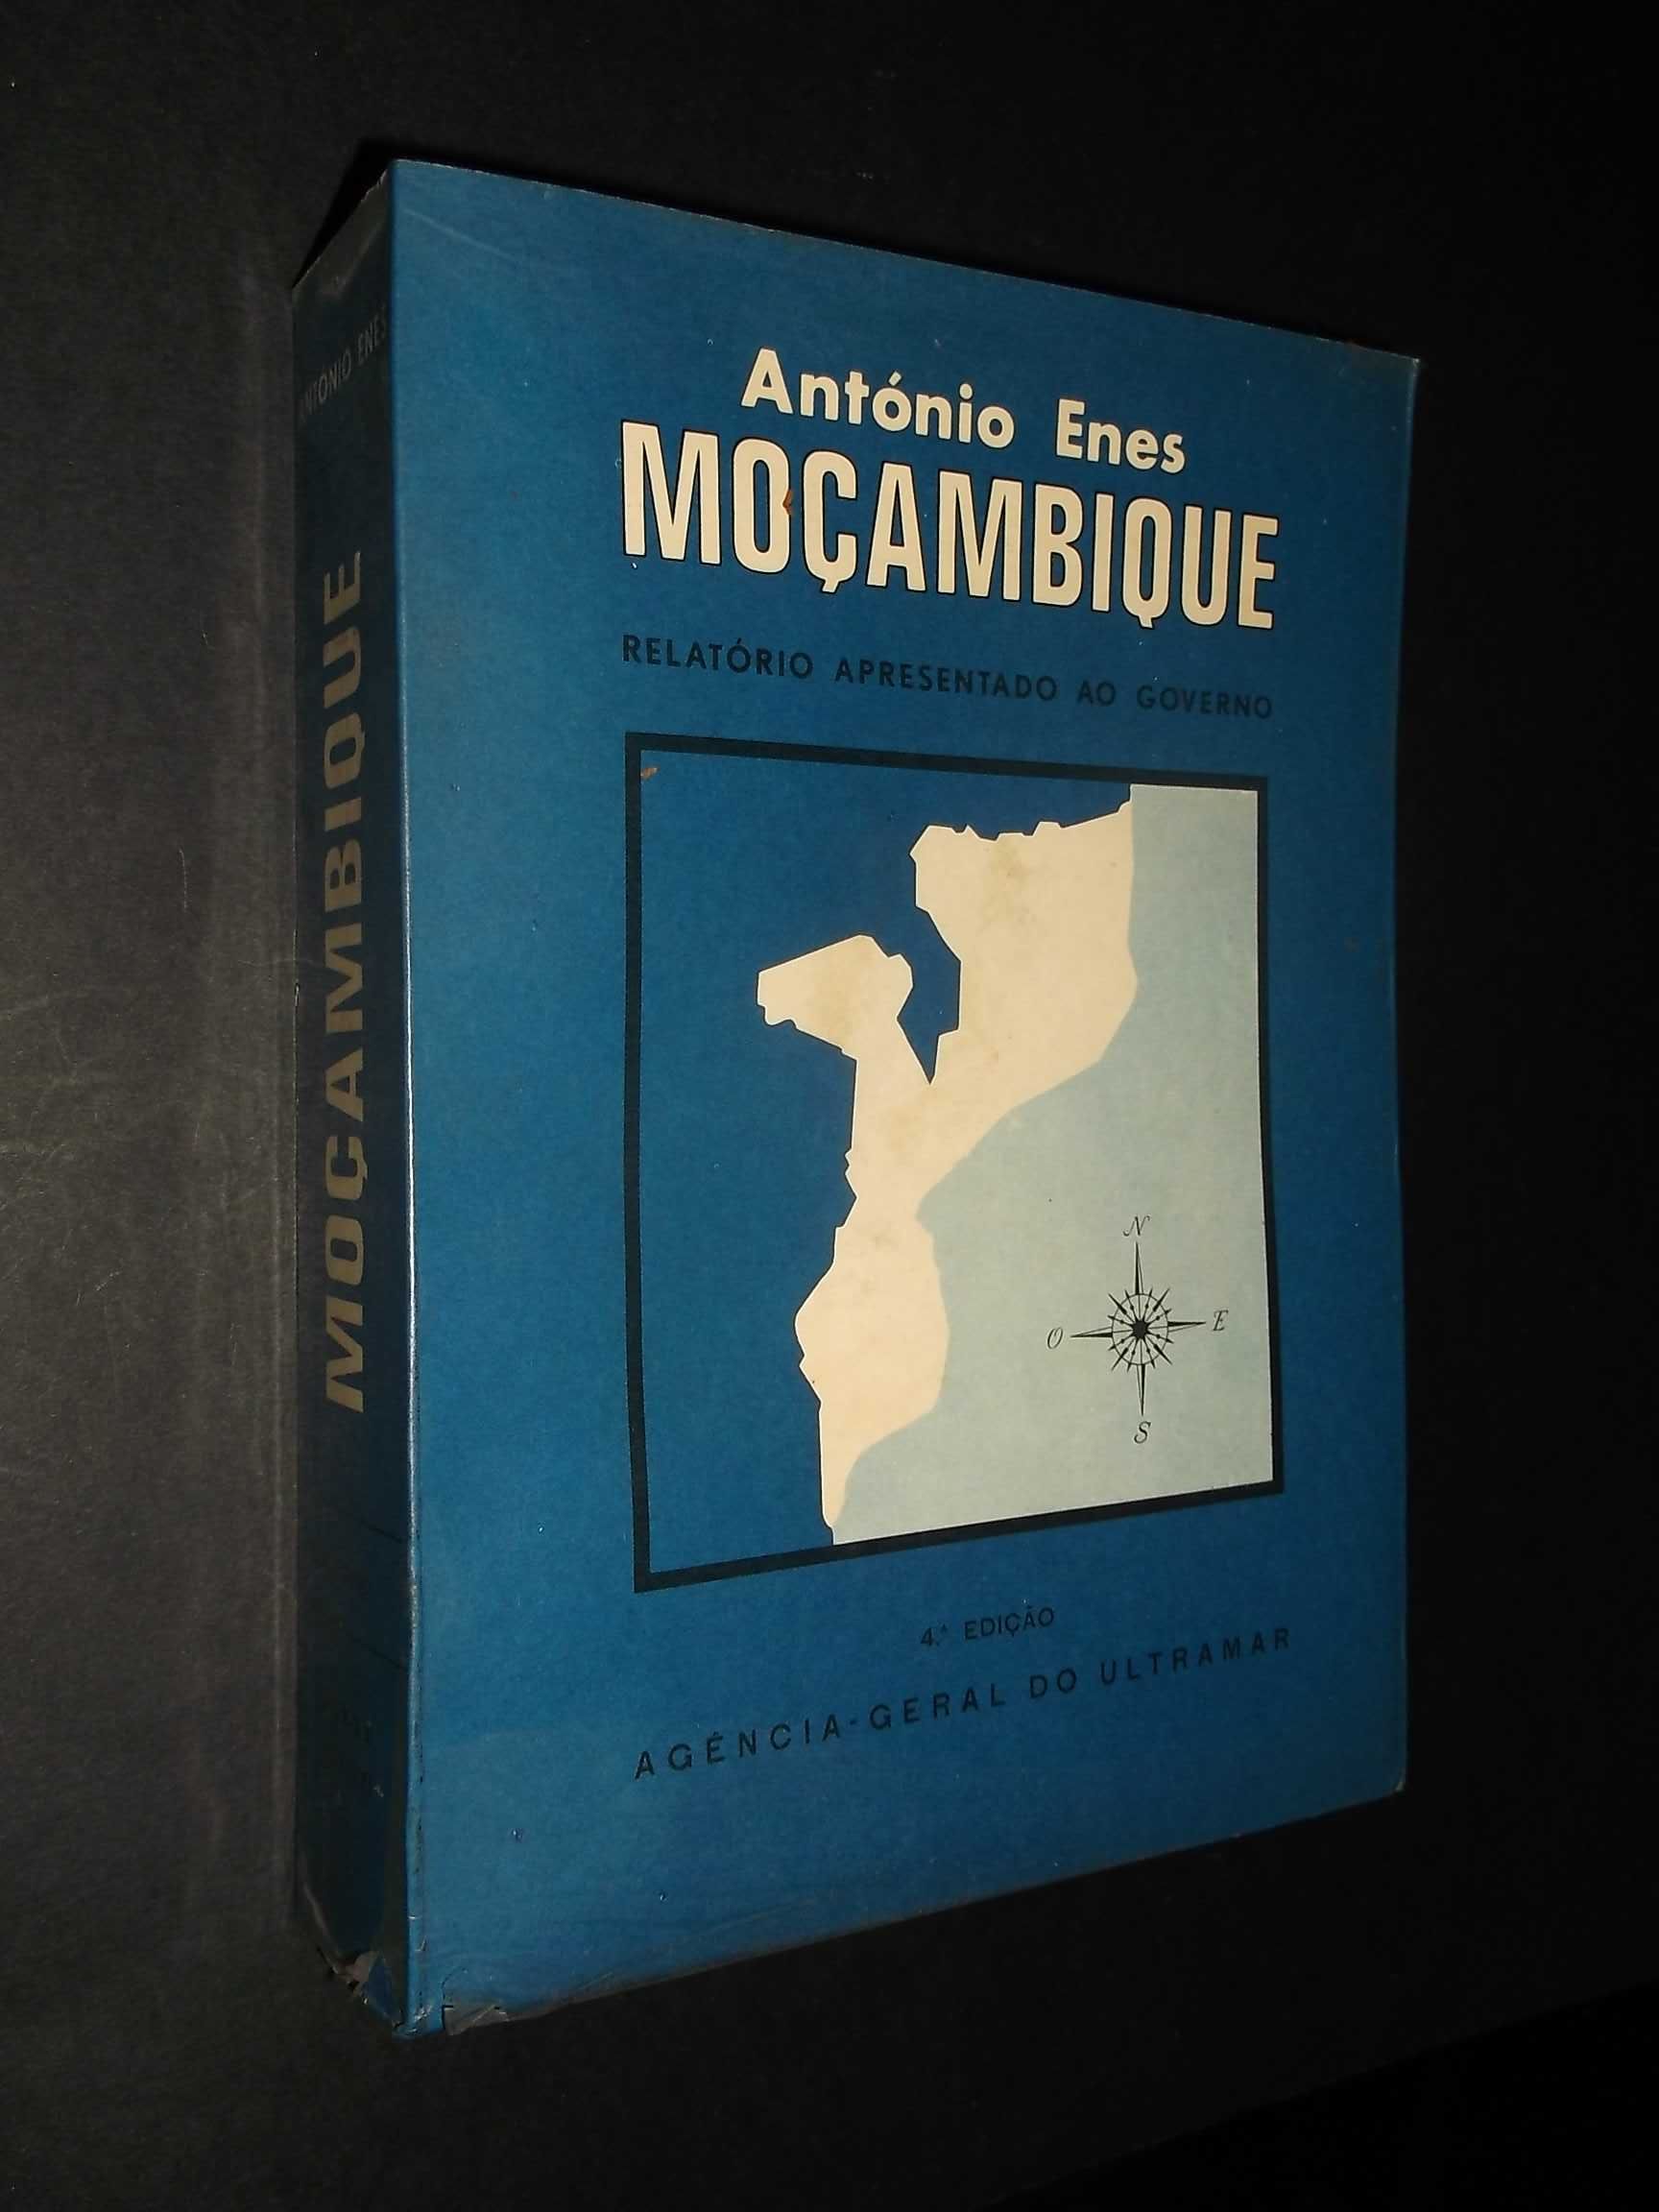 MOÇAMBIQUE relatório apresentado ao governo de Antonio Ennes